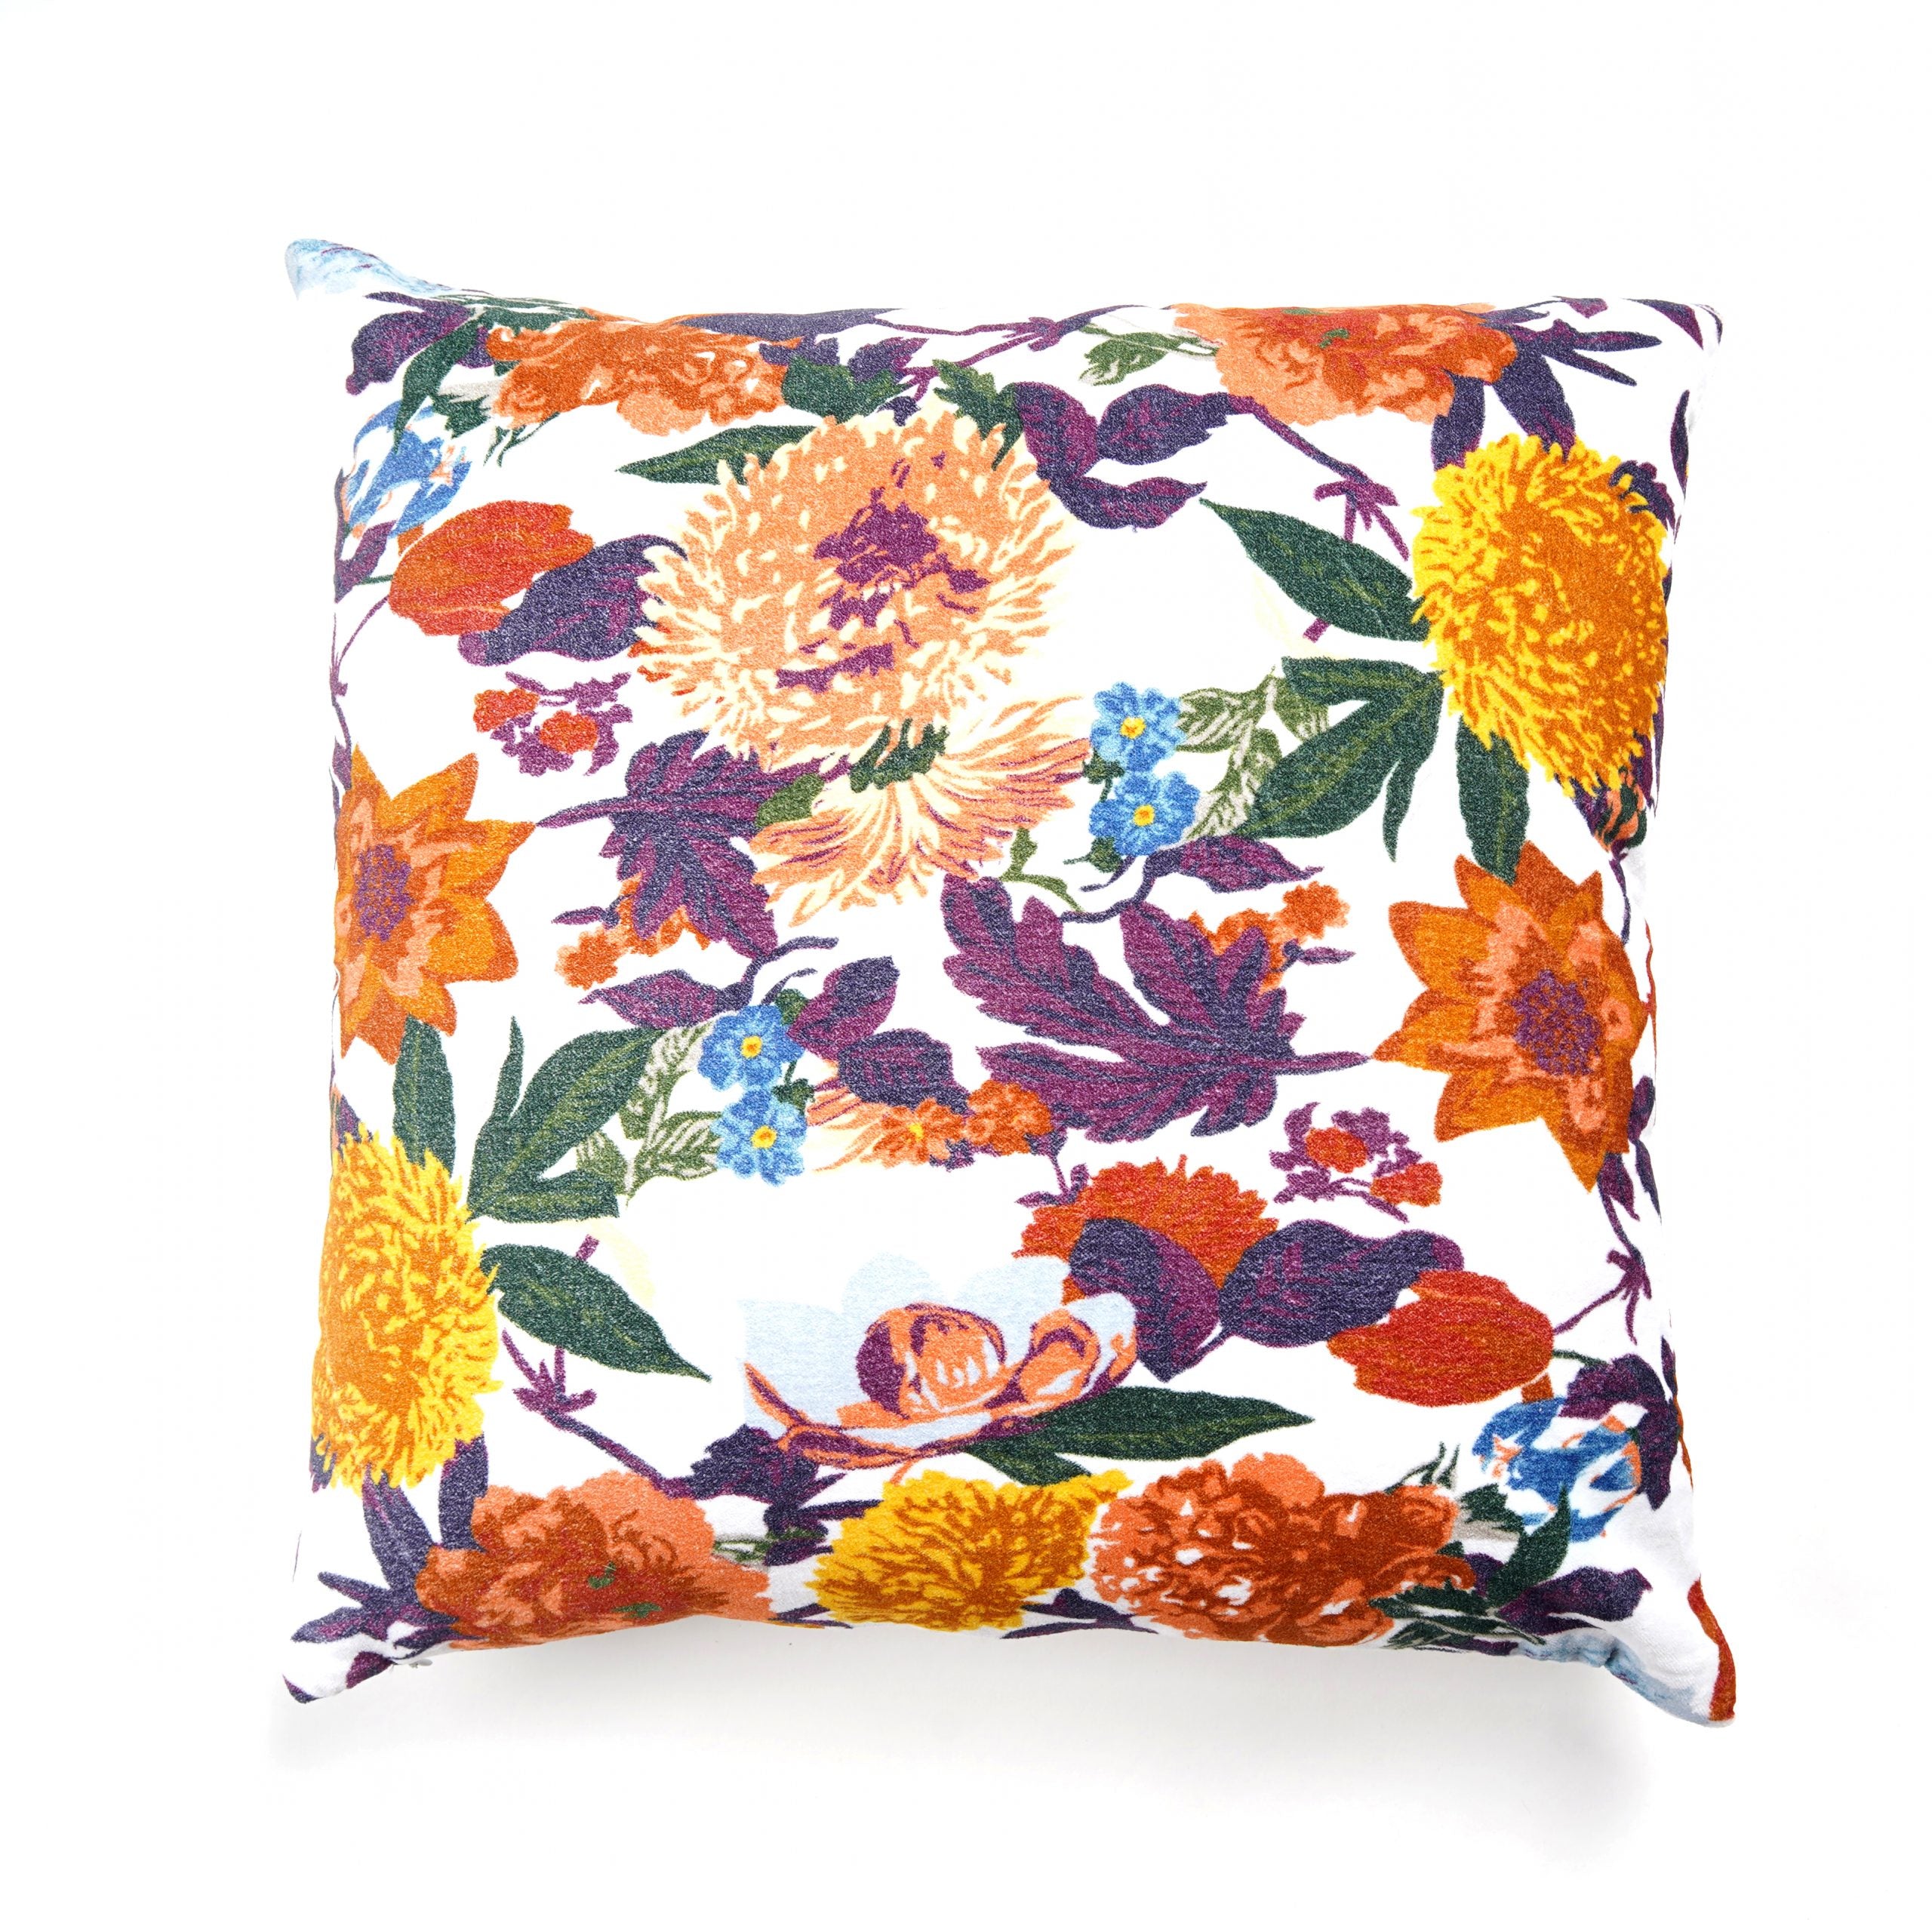 'Floral Fancy' 100% Cotton Velvet Cushion Cover